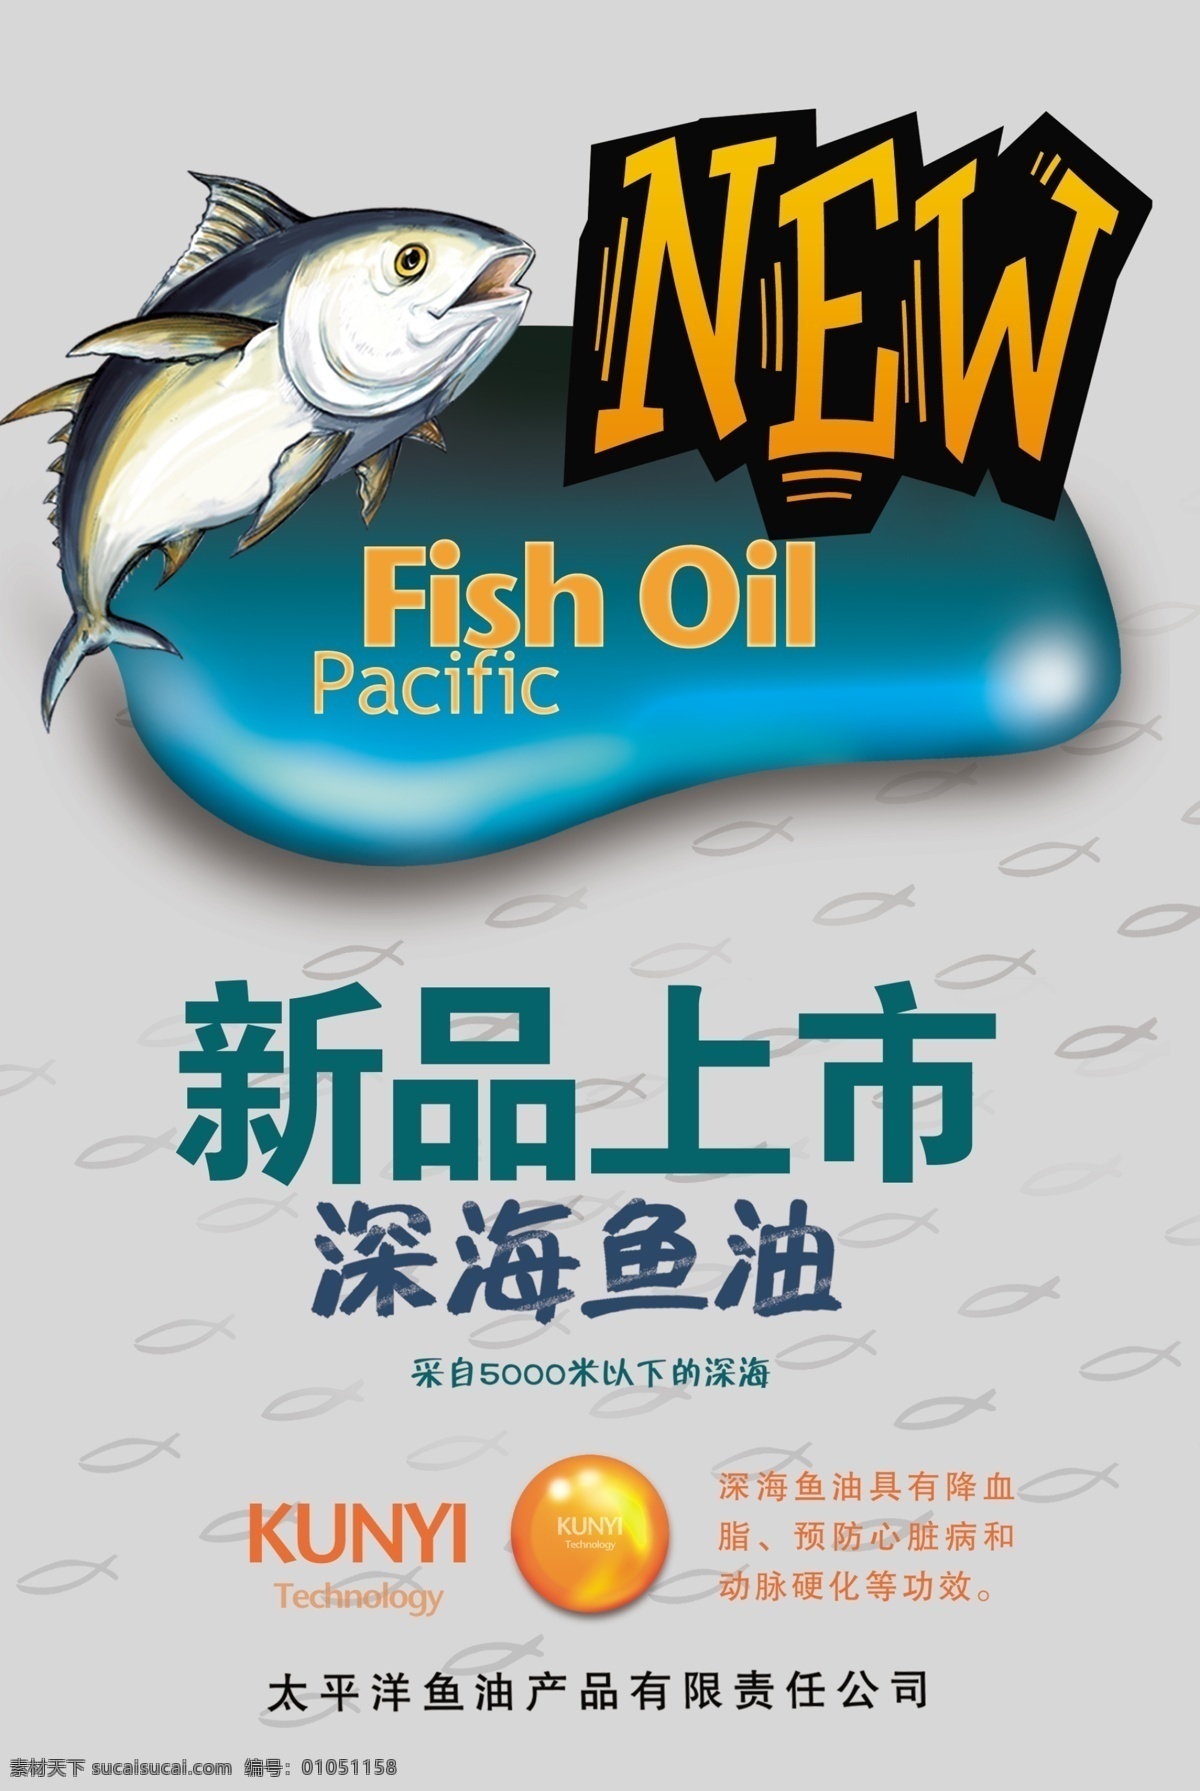 鱼油 海报 广告图 卡通 深海鱼油 鱼油海报 fish oil 其他海报设计